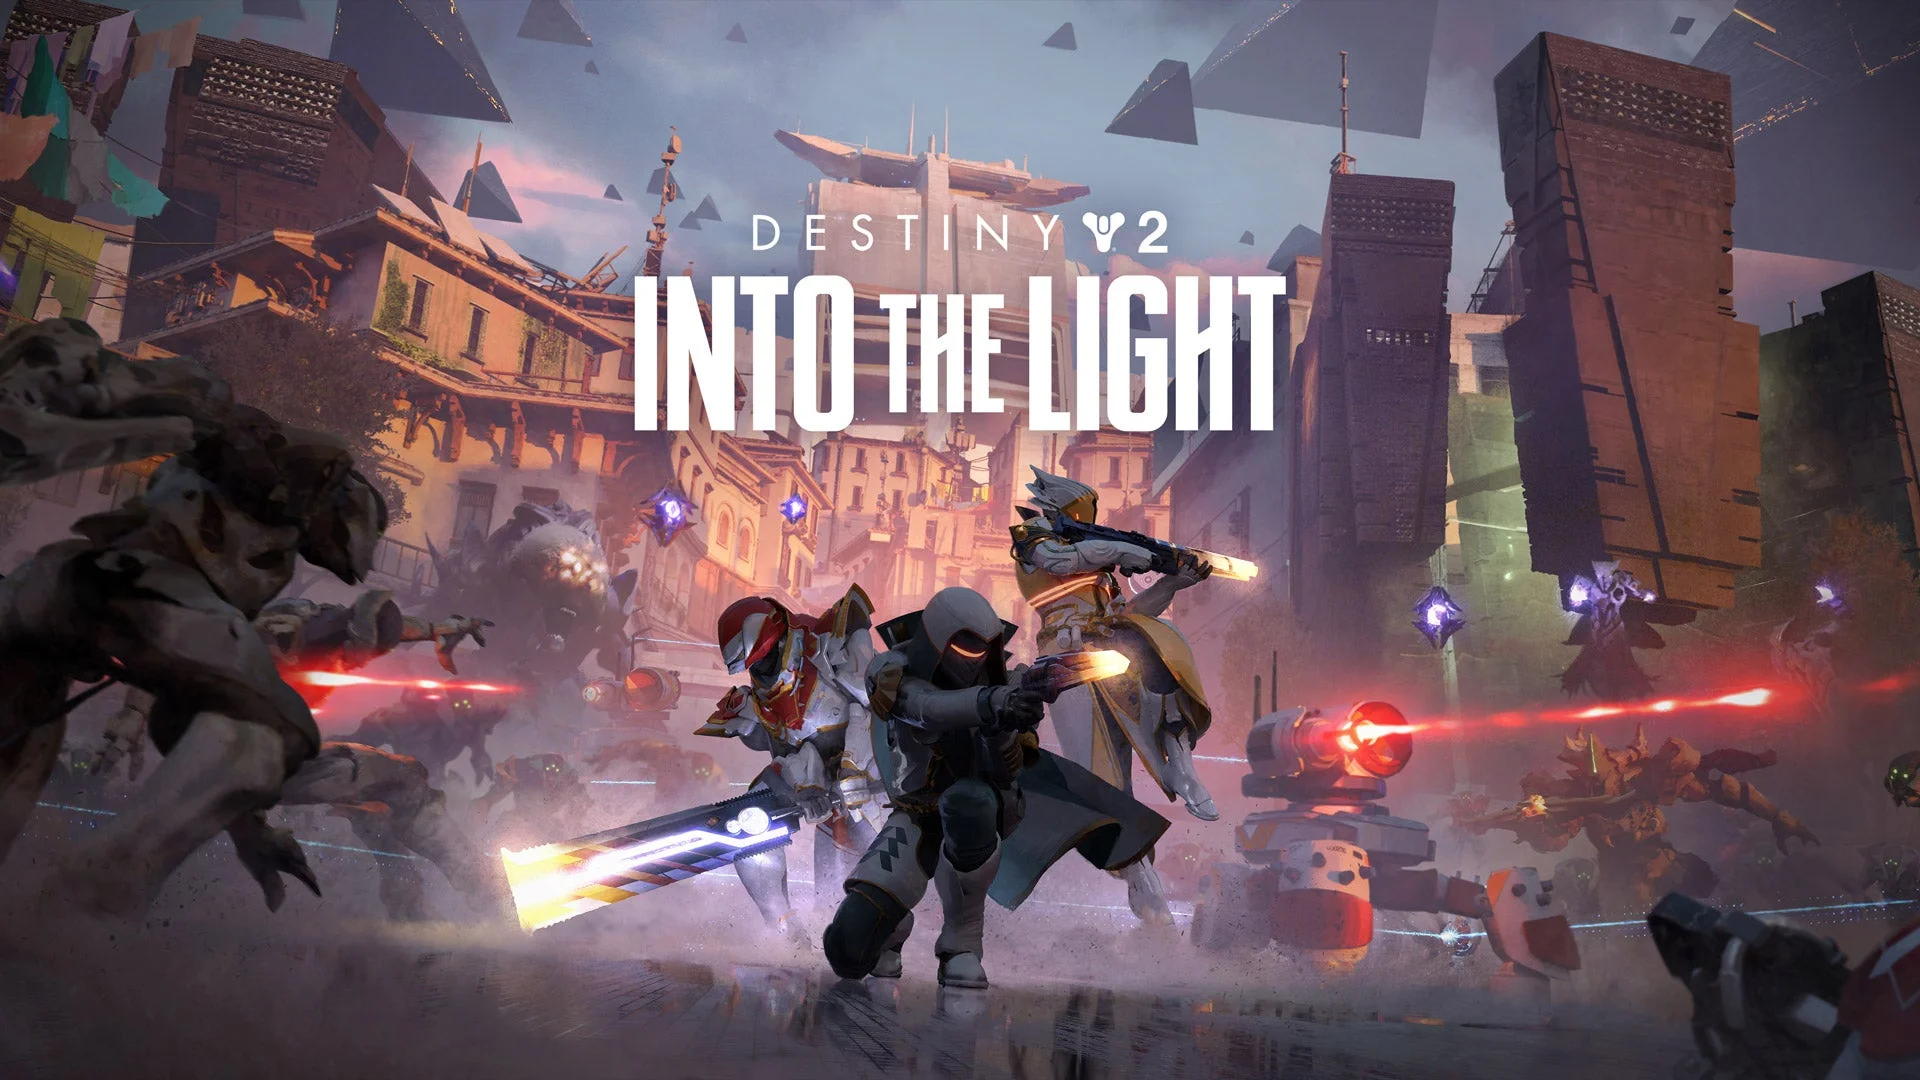 Idag, den 26 mars, kommer Destiny 2: Into the Light att streamas live och visa nya vapen och ett nytt socialt område